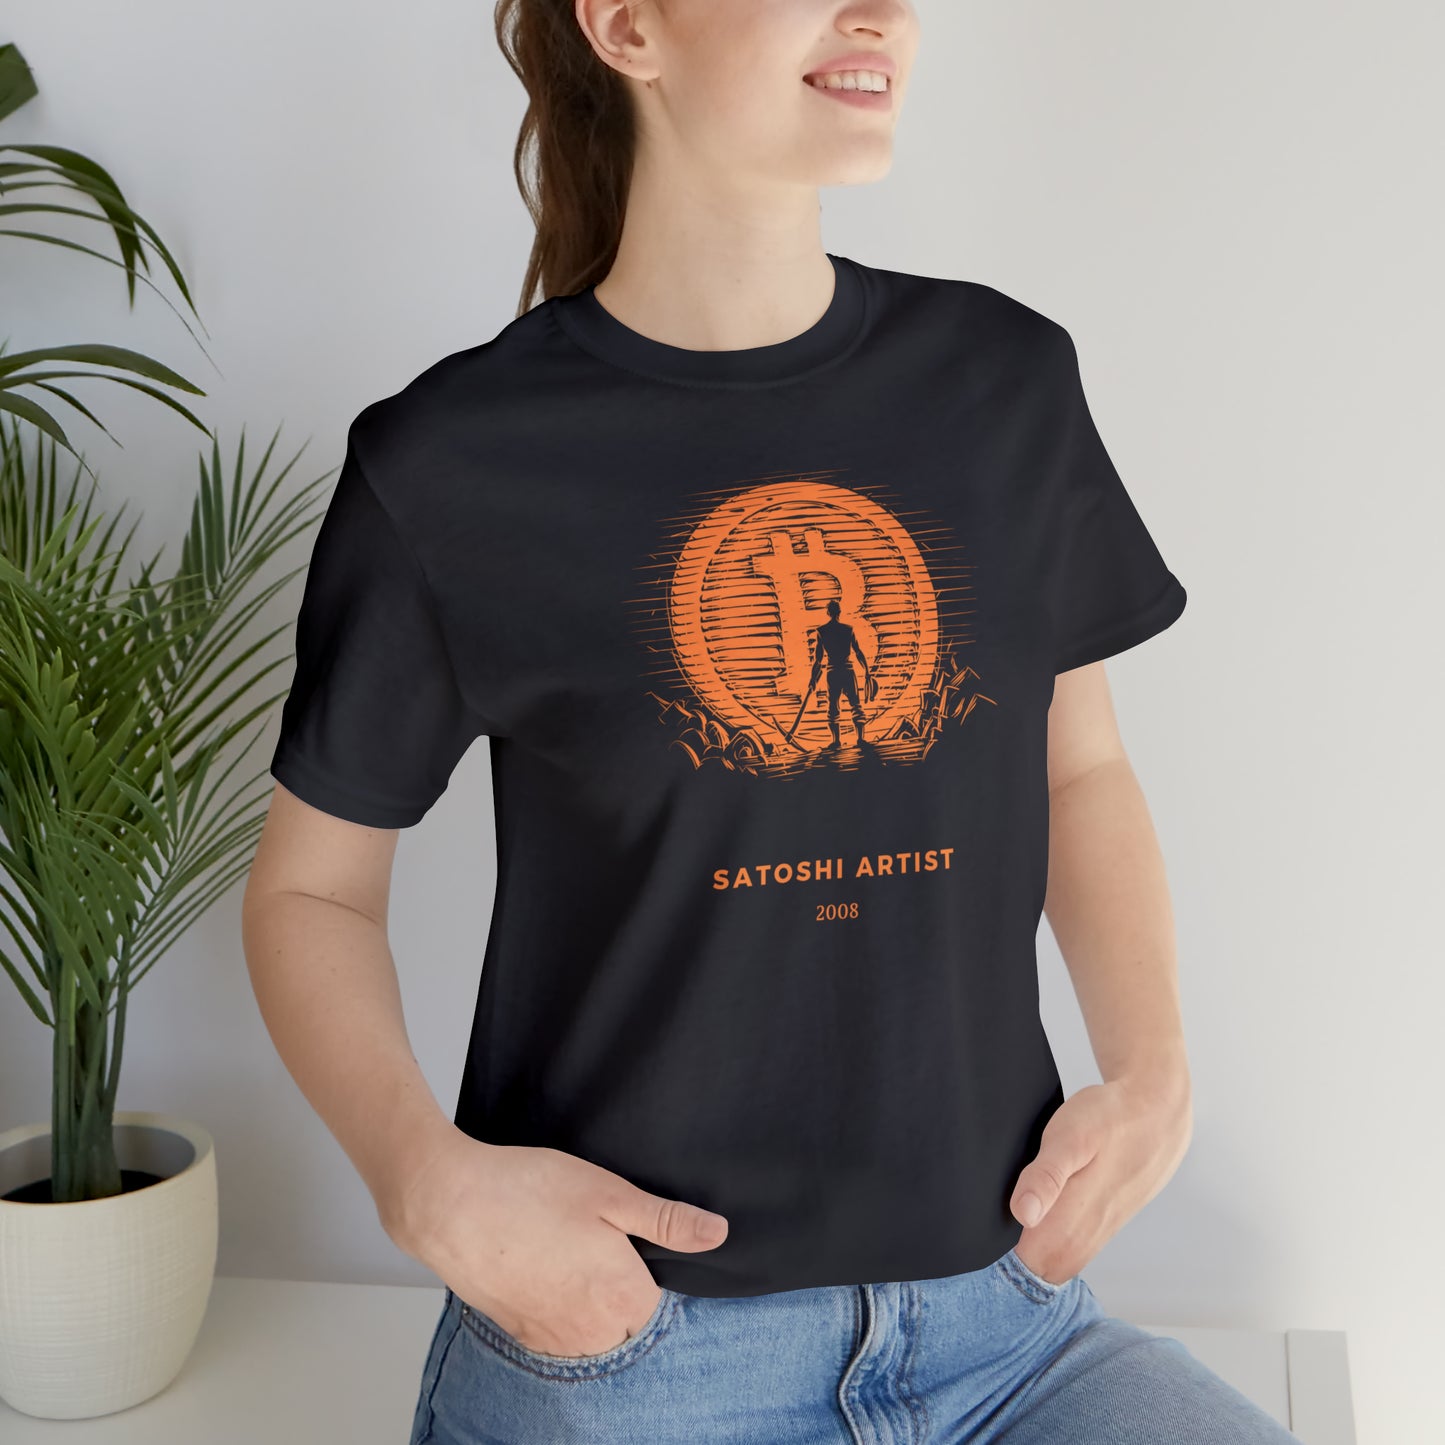 Unisex Jersey Short Sleeve Bitcoin Warrior T-shirt